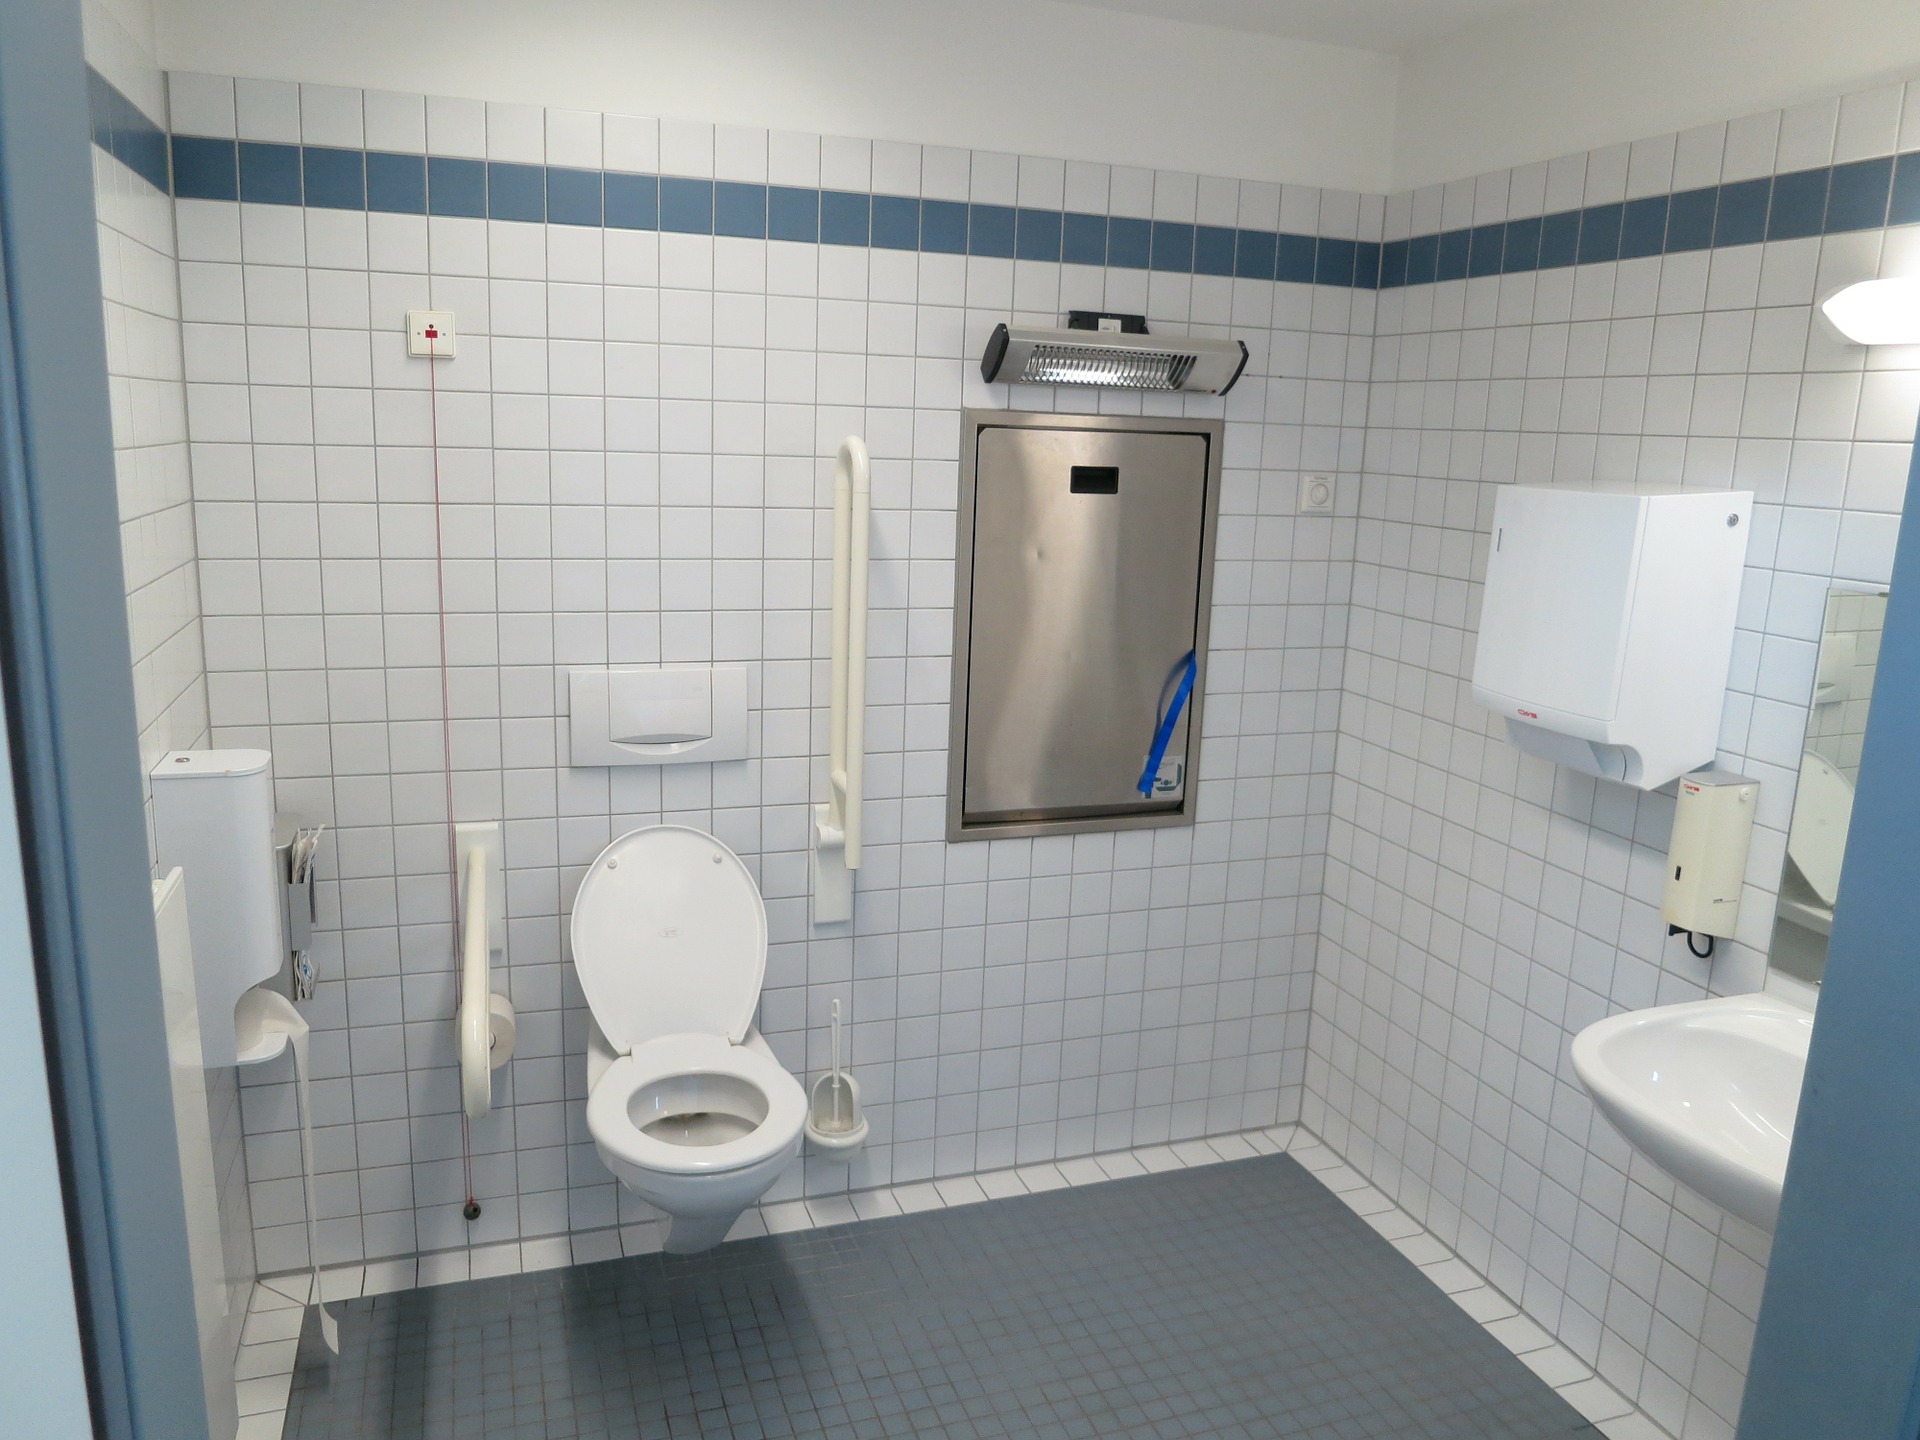 Des toilettes adaptées aux personnes handicapées et PMR ont besoin d'être particulièrement spacieuses. // Source : Pixabay